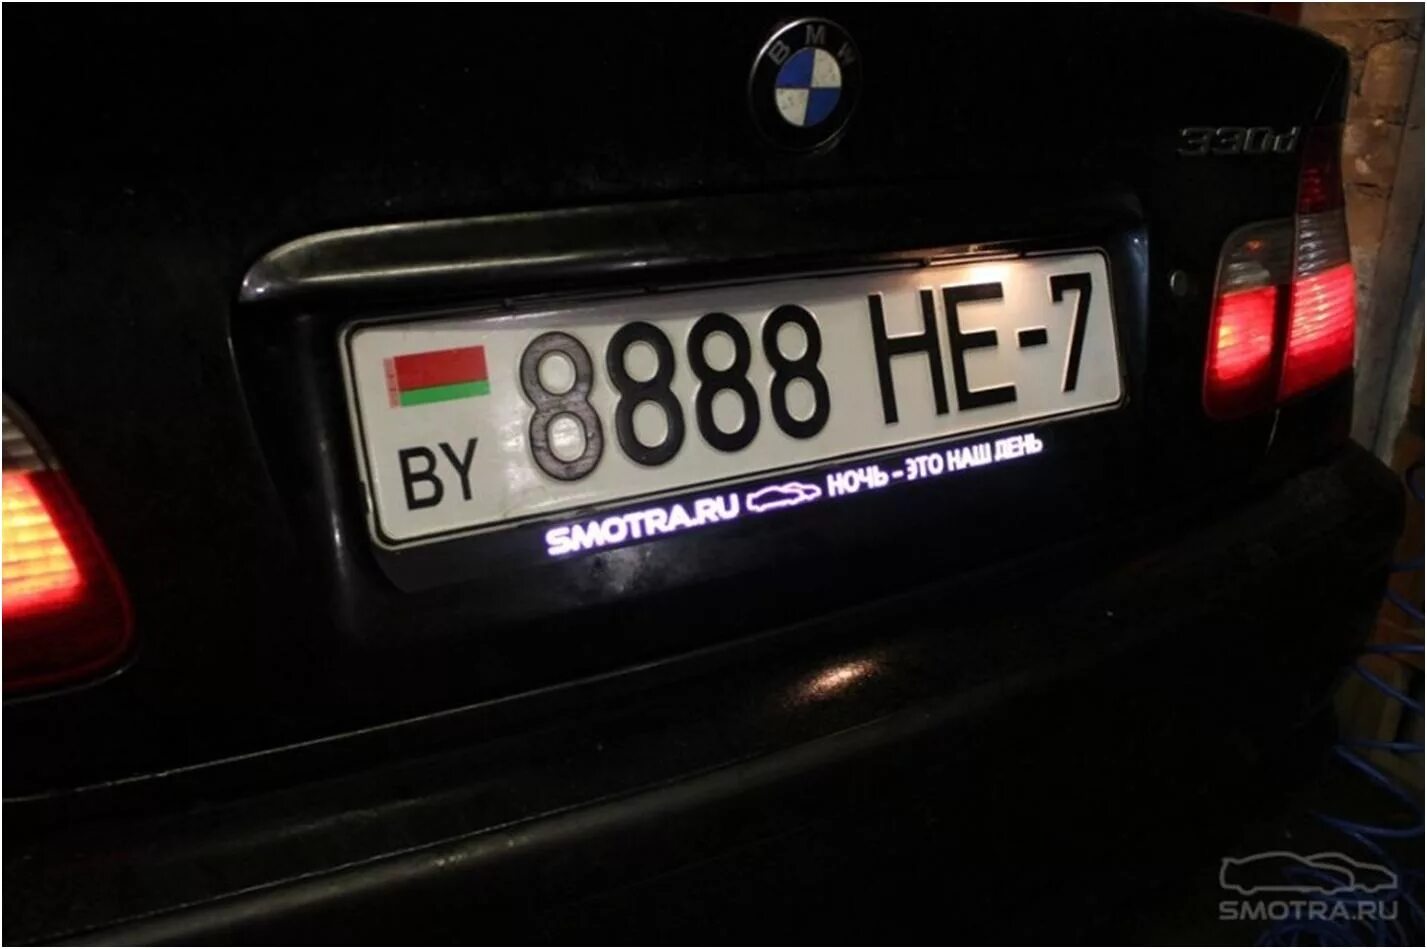 Рамка номерного знака BMW. Рамка номера 2101-07 с подсветкой. Рамка номерного знака с подсветкой номера. Электронные номера на машину